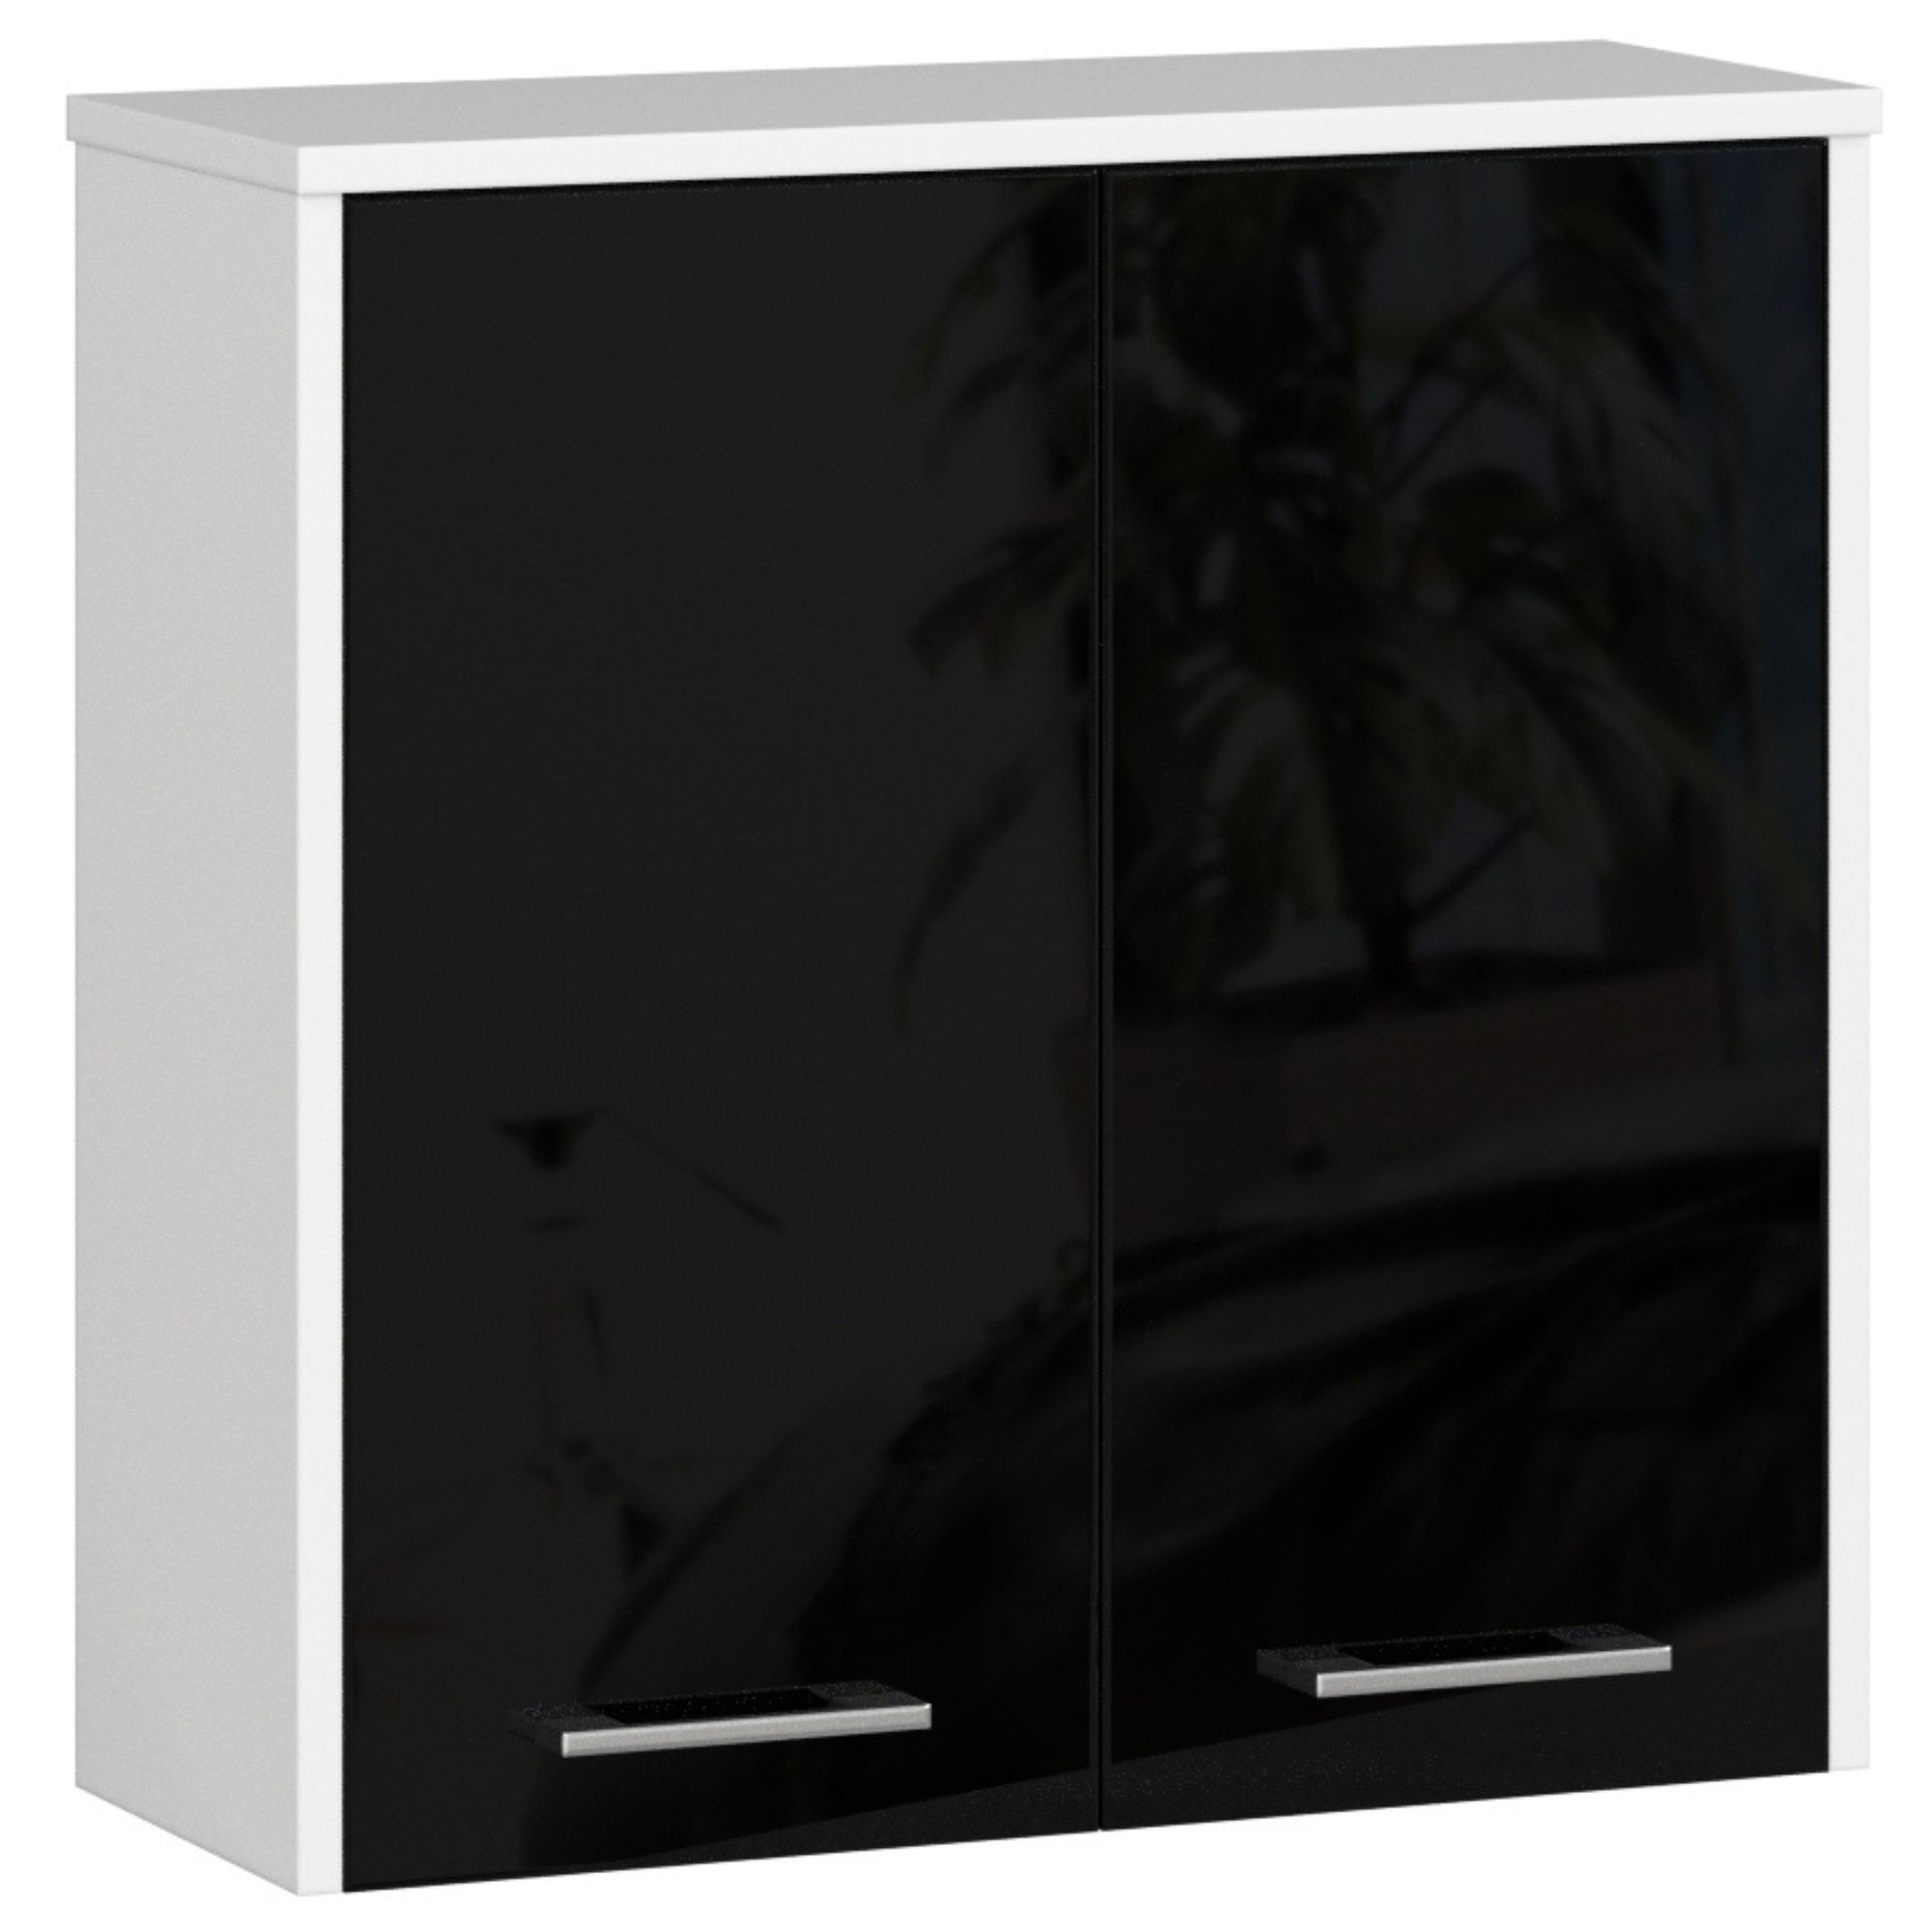 E-shop Dizajnová kúpeľňová skrinka ISLA60, biela / čierny lesk